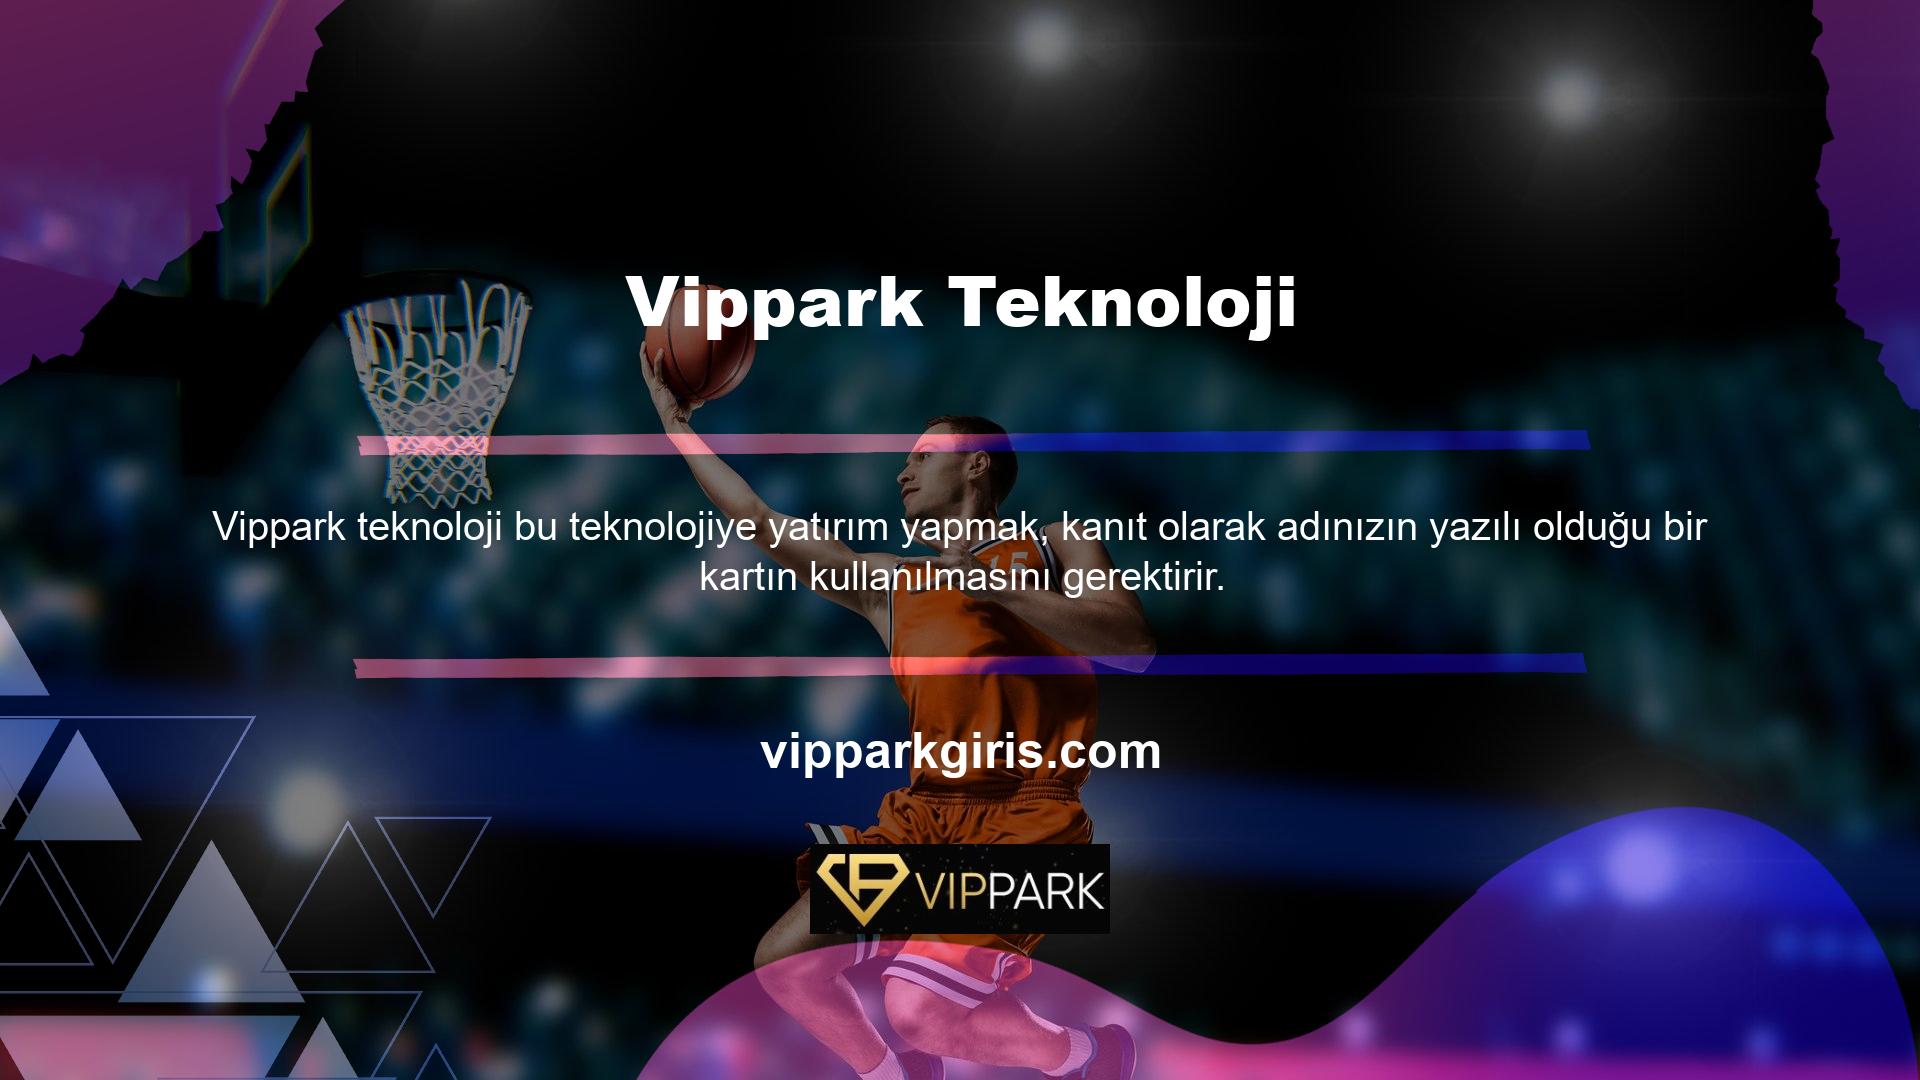 Vippark çevrimiçi şubesi veya mobil uygulaması, banka hesabınızdan para aktarmanıza olanak tanır